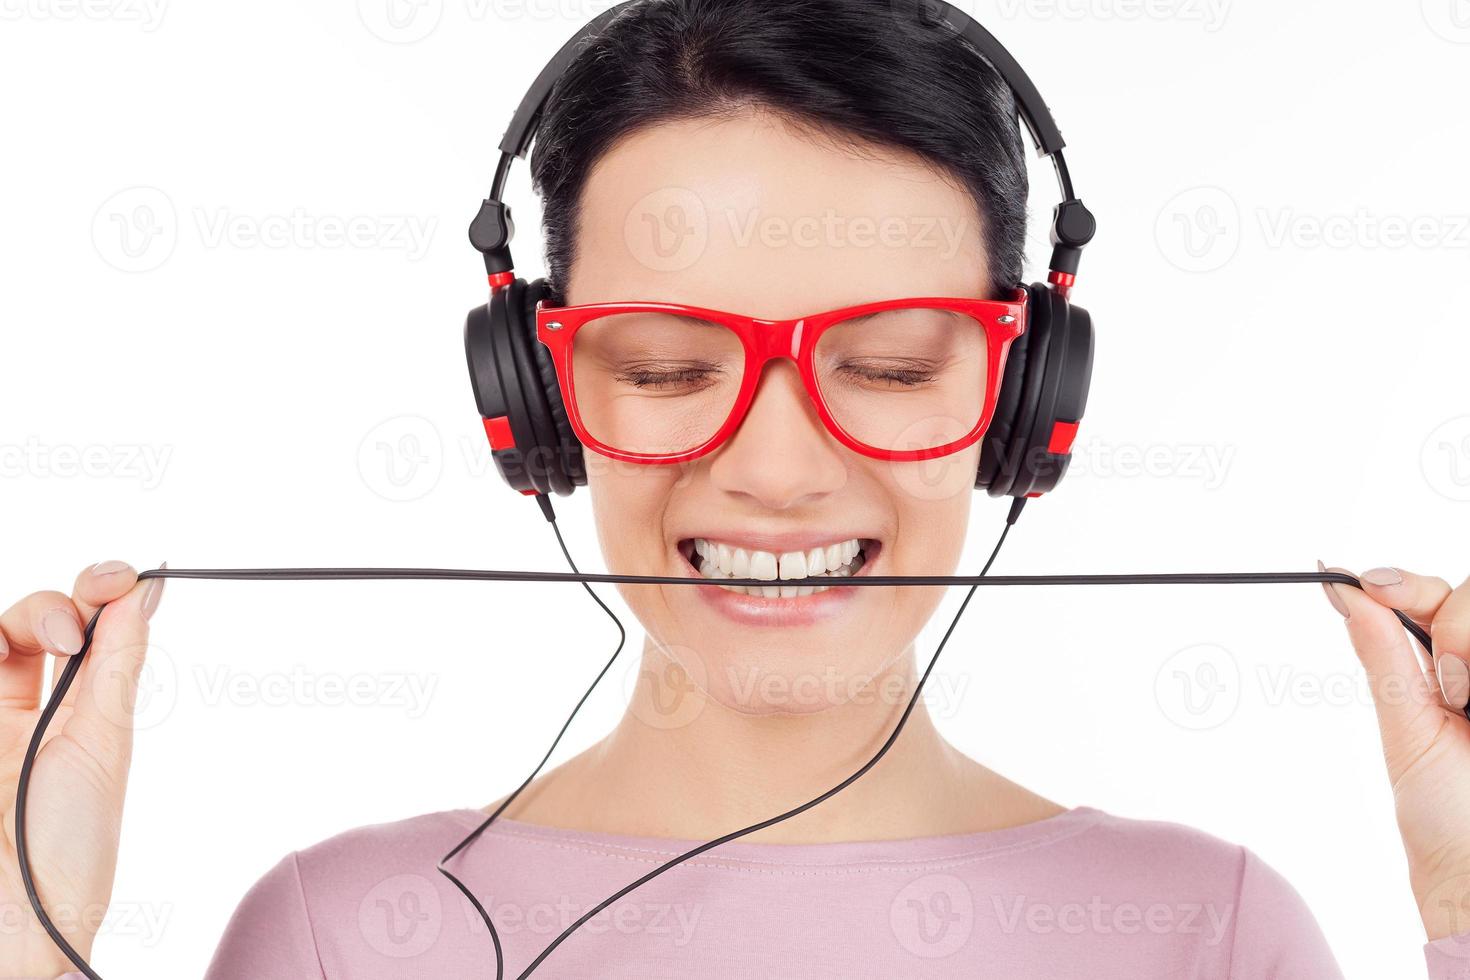 es ist ihr lieblingslied. Schöne junge Frau mit roter Brille und Kopfhörern, die Musik hört und die Augen geschlossen hält, während sie isoliert auf Weiß steht foto